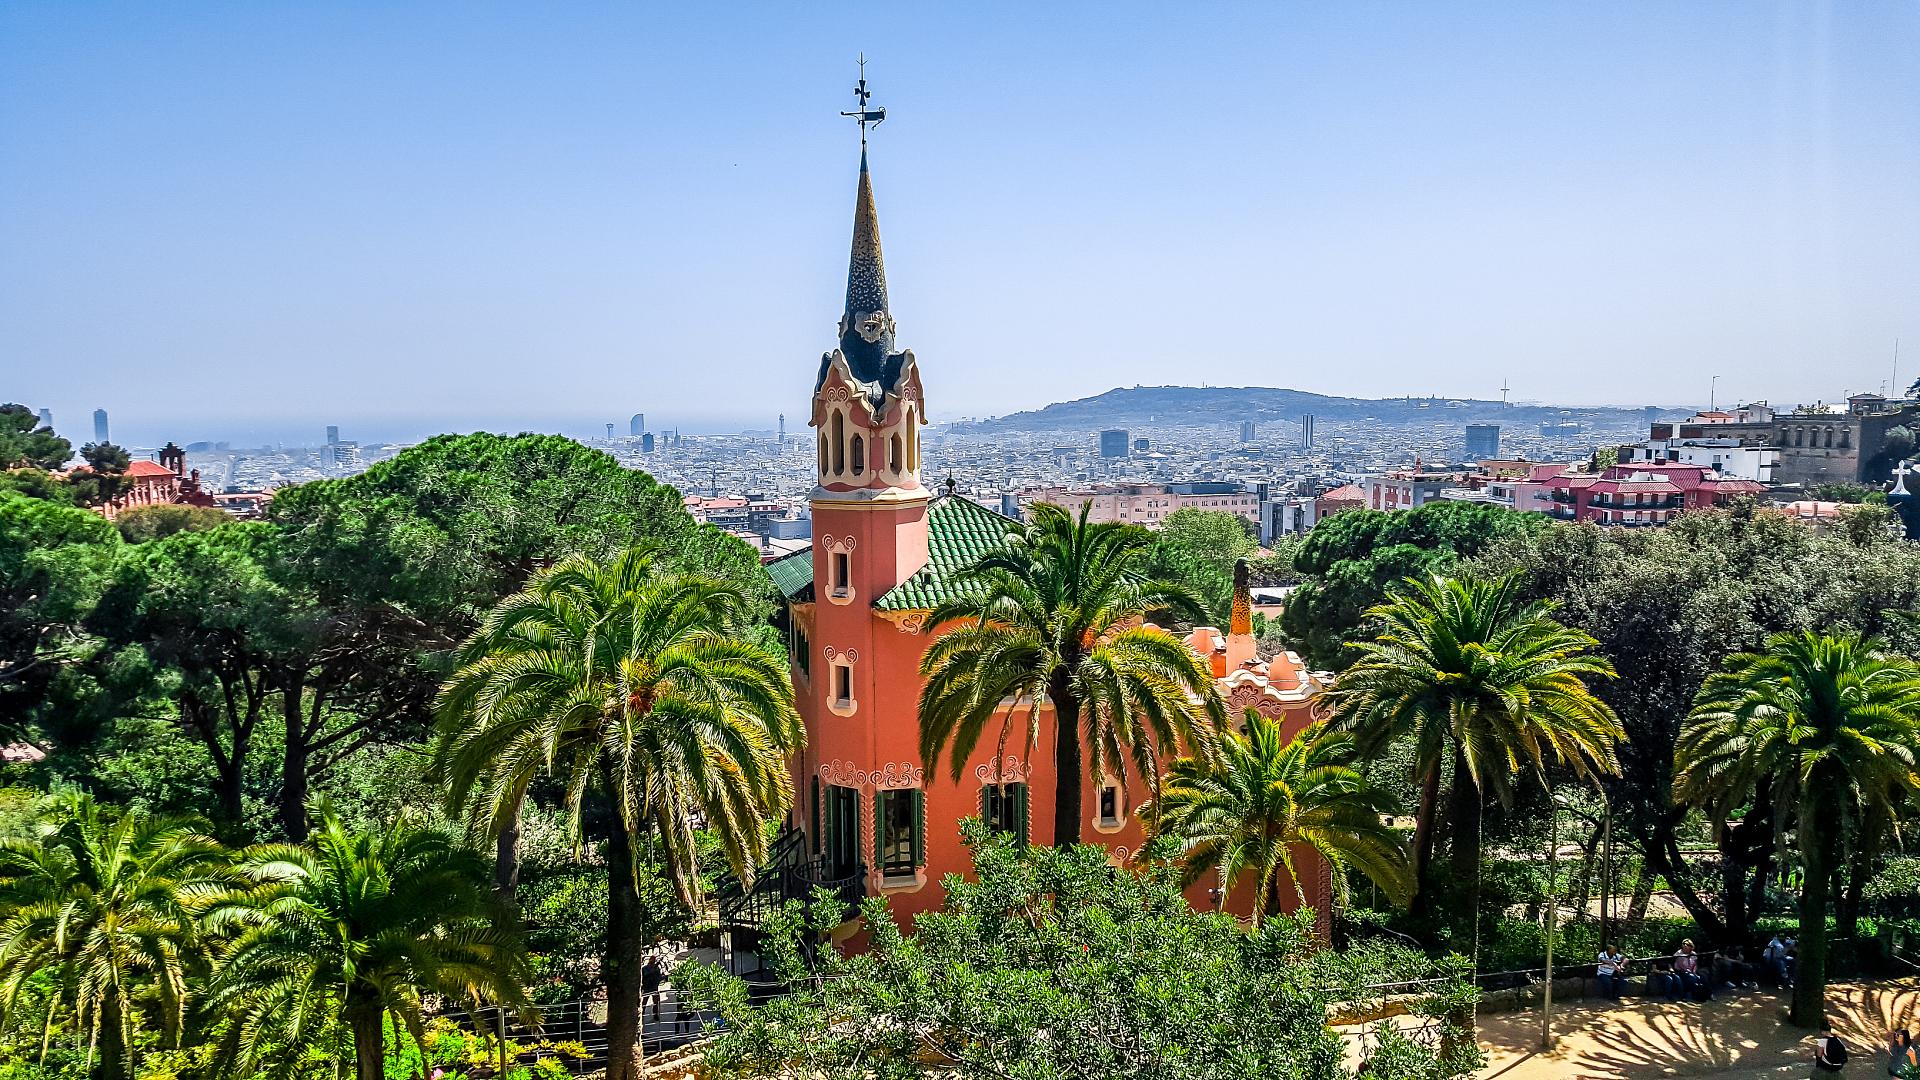 Explore Gaudí's modernist architecture